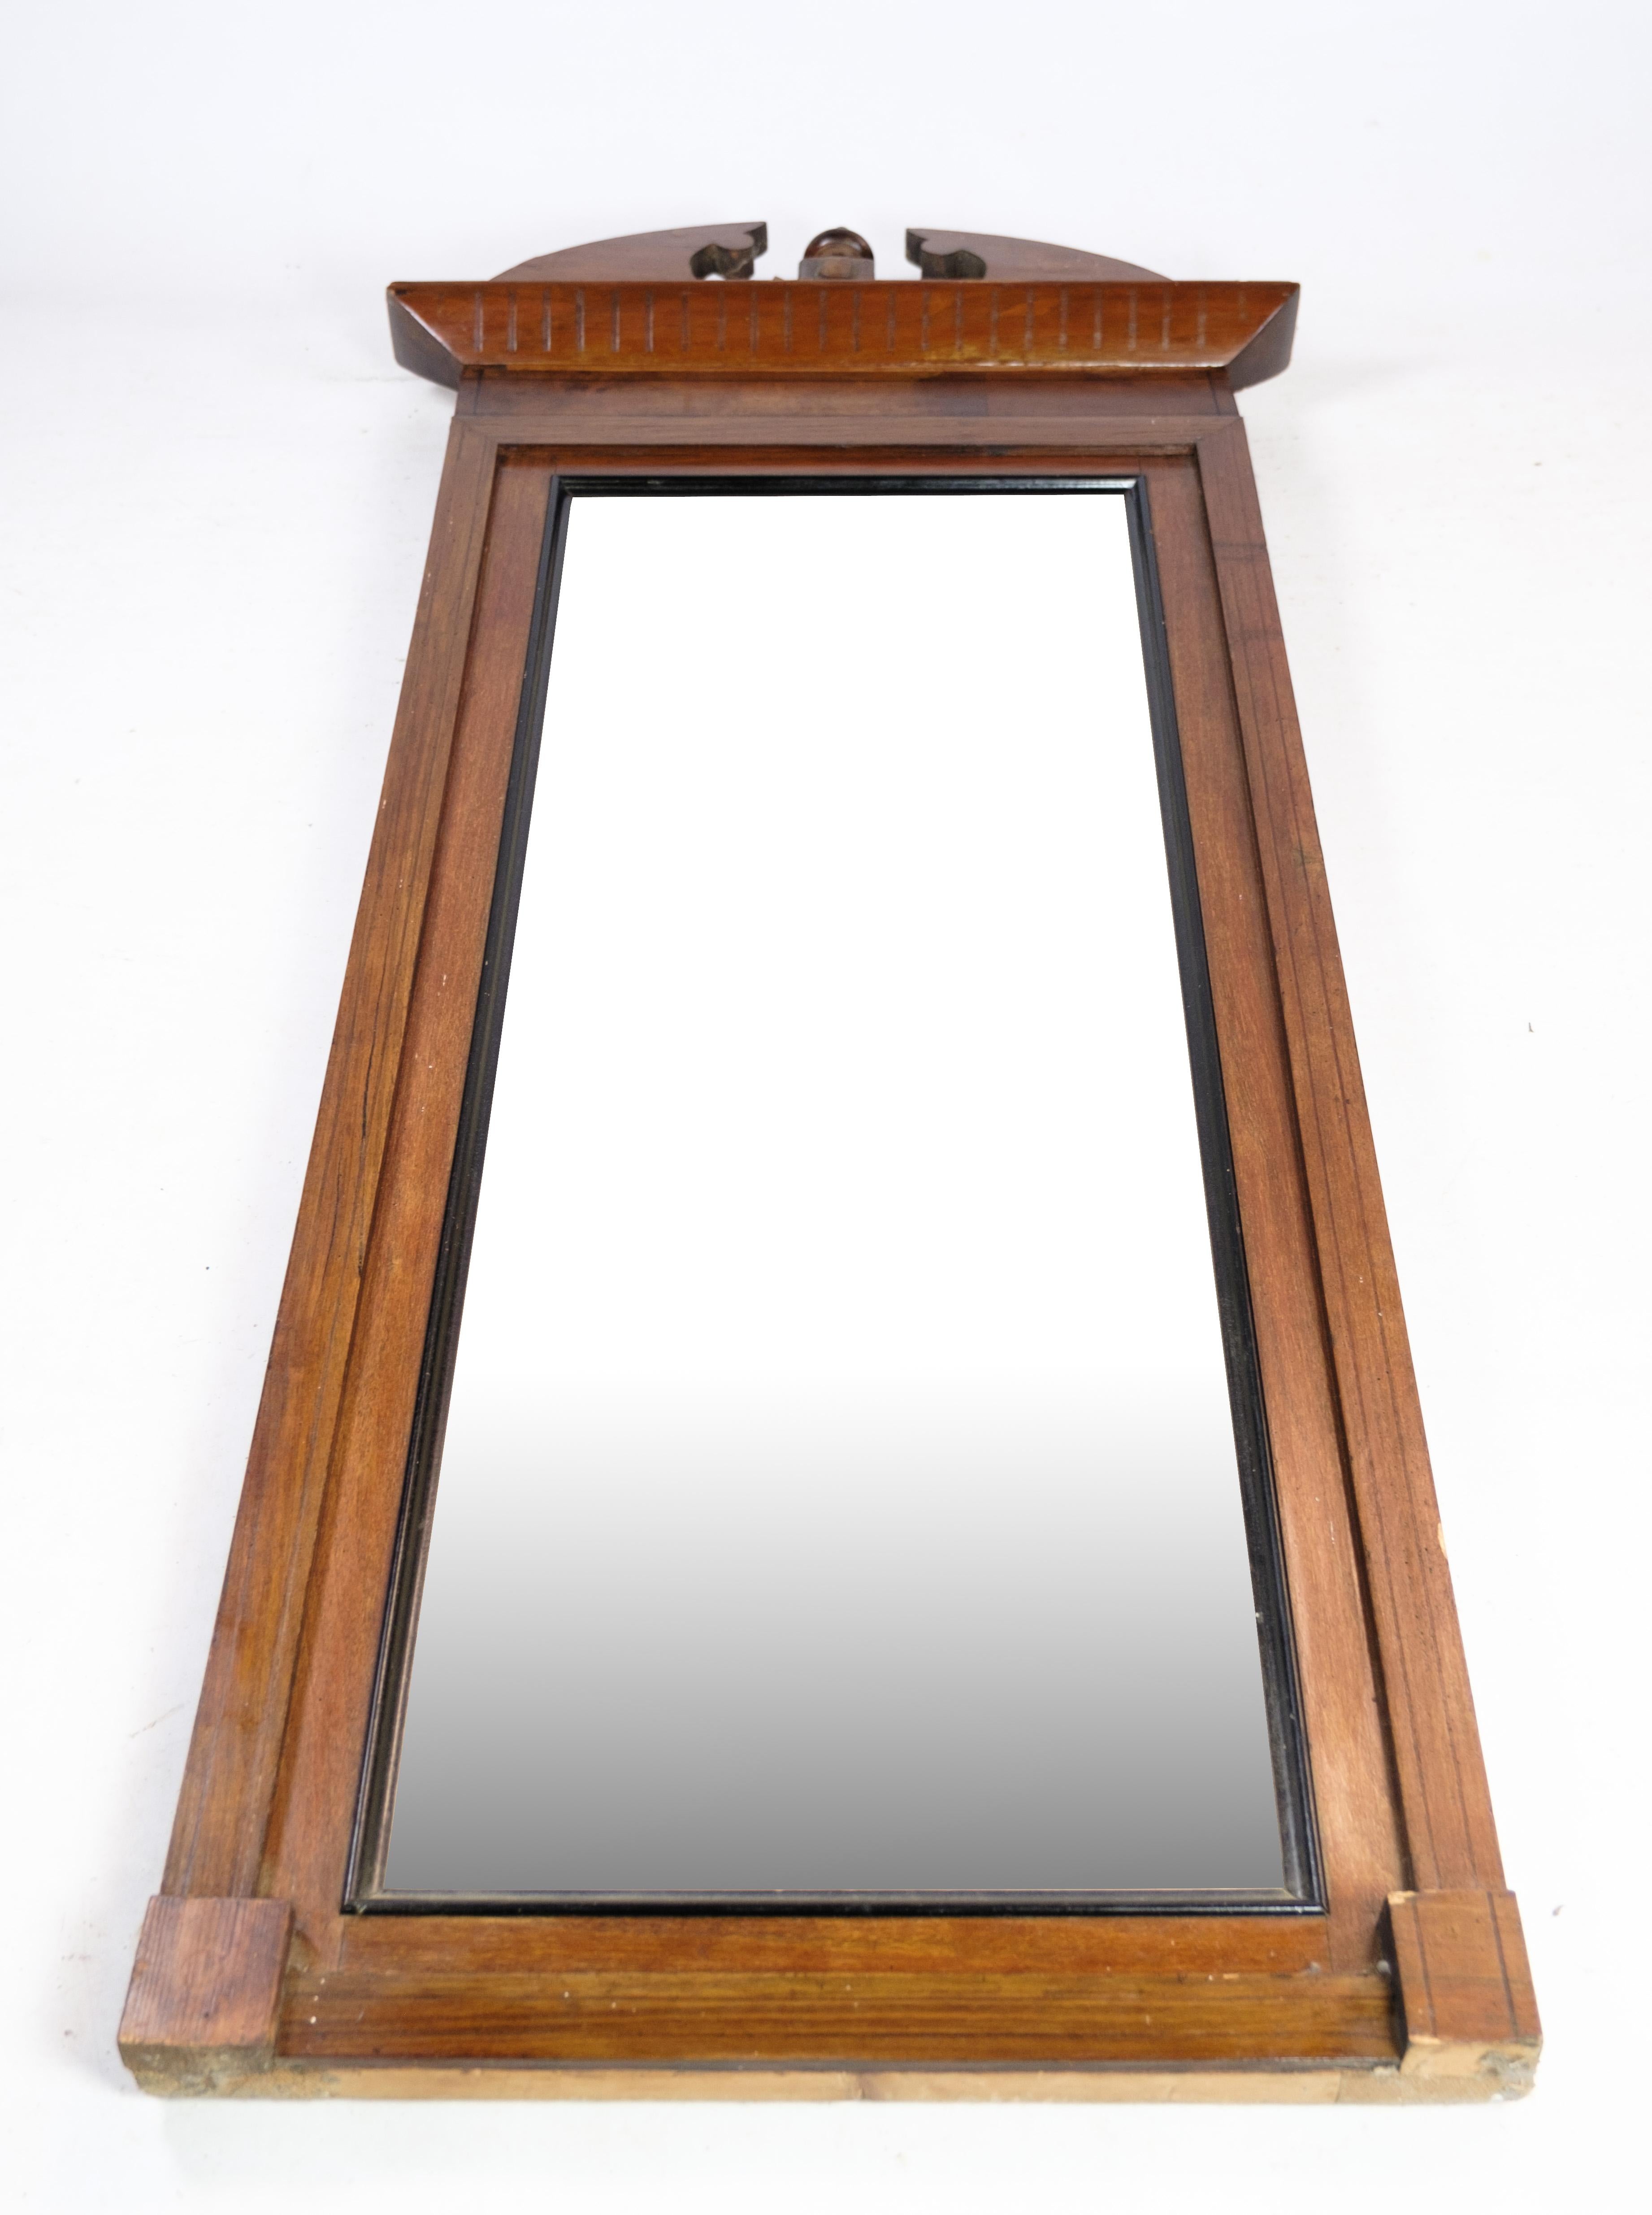 Der Spiegel aus handpoliertem Mahagoni ist ein schönes und einzigartiges Möbelstück aus der späten Empirezeit. Dieser Spiegel wurde um 1840 in Dänemark hergestellt und zeichnet sich durch komplizierte Schnitzereien aus, die seine Eleganz und seinen